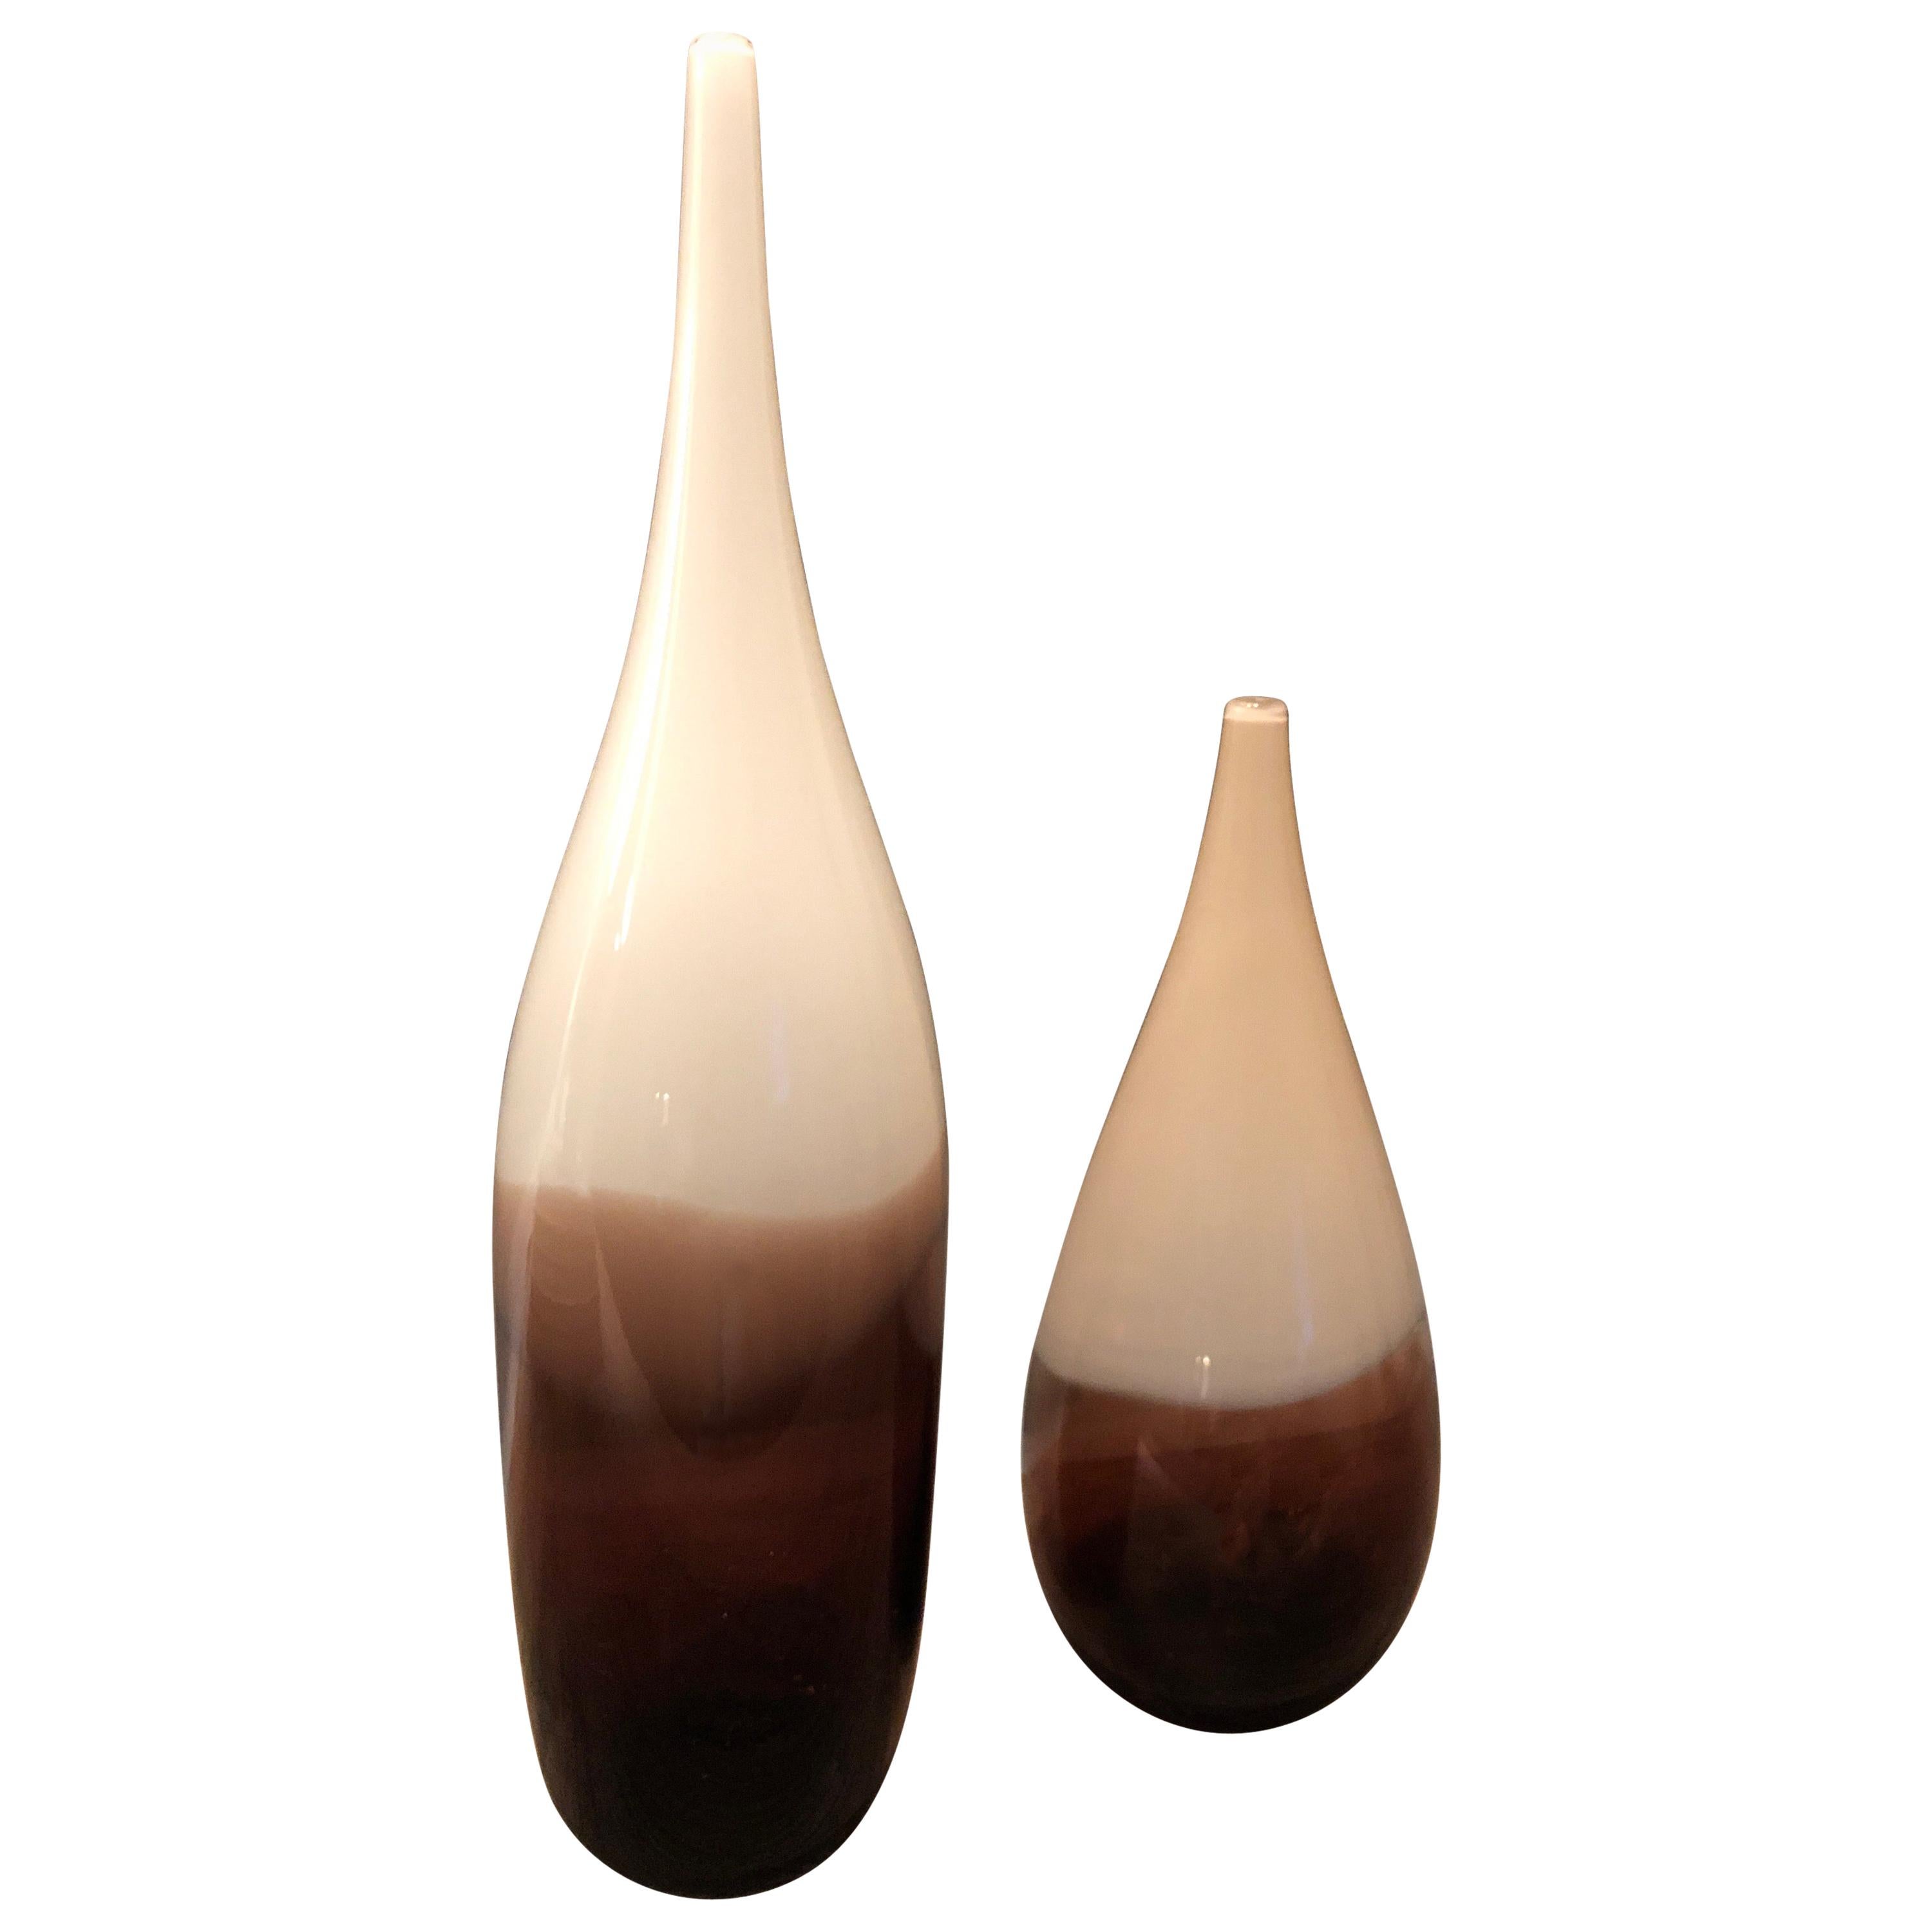 Paire de vases Lattimo en forme de goutte d'eau Siemon et Salazar blanc/ivoire/ambre, signés